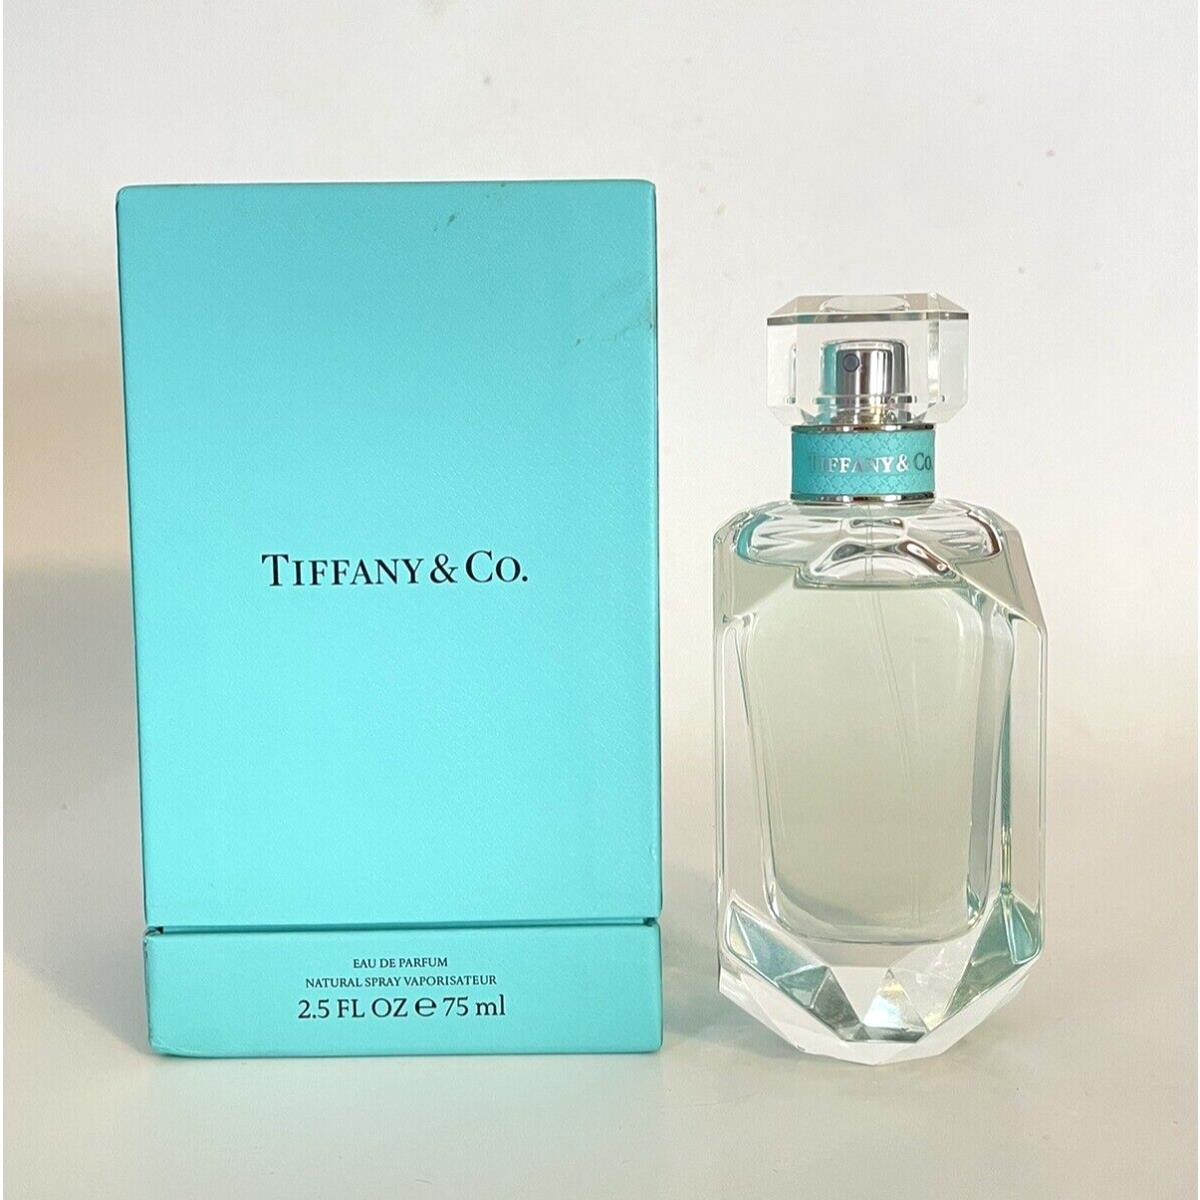 Tiffany Co. by Tiffany Co 2.5 oz Perfume Fragrance w/ Box Read